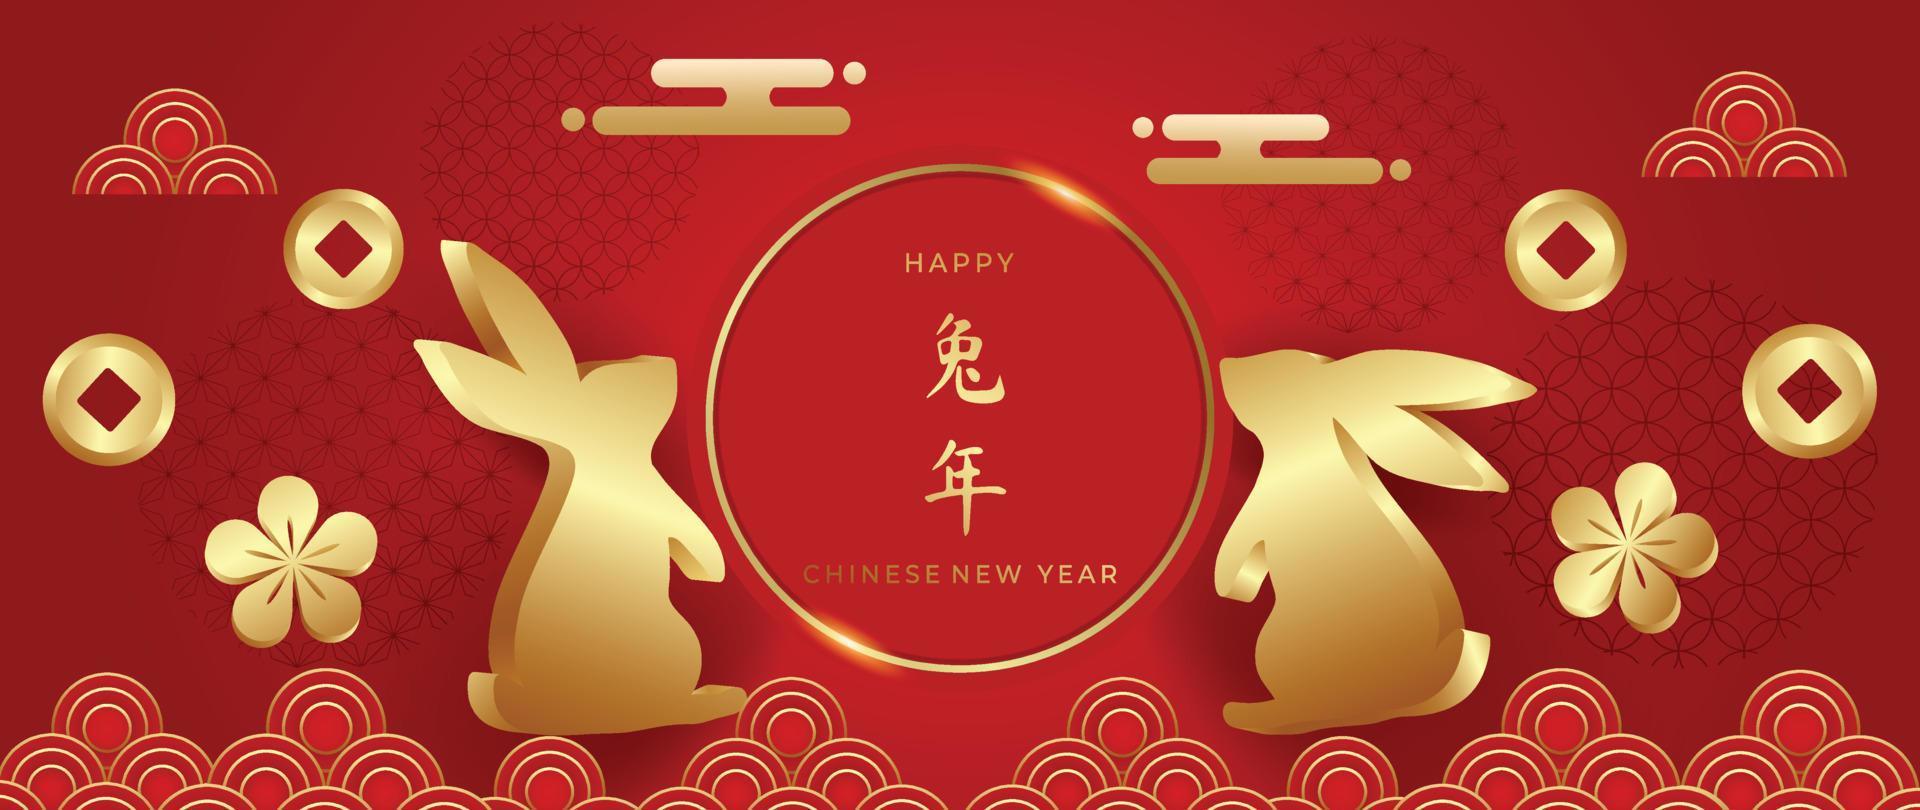 ano novo chinês do vetor de fundo de luxo de coelho. coelho dourado 3d realista com flor oriental e moedas em fundo vermelho padrão chinês. ilustração de design para papel de parede, cartão, pôster.